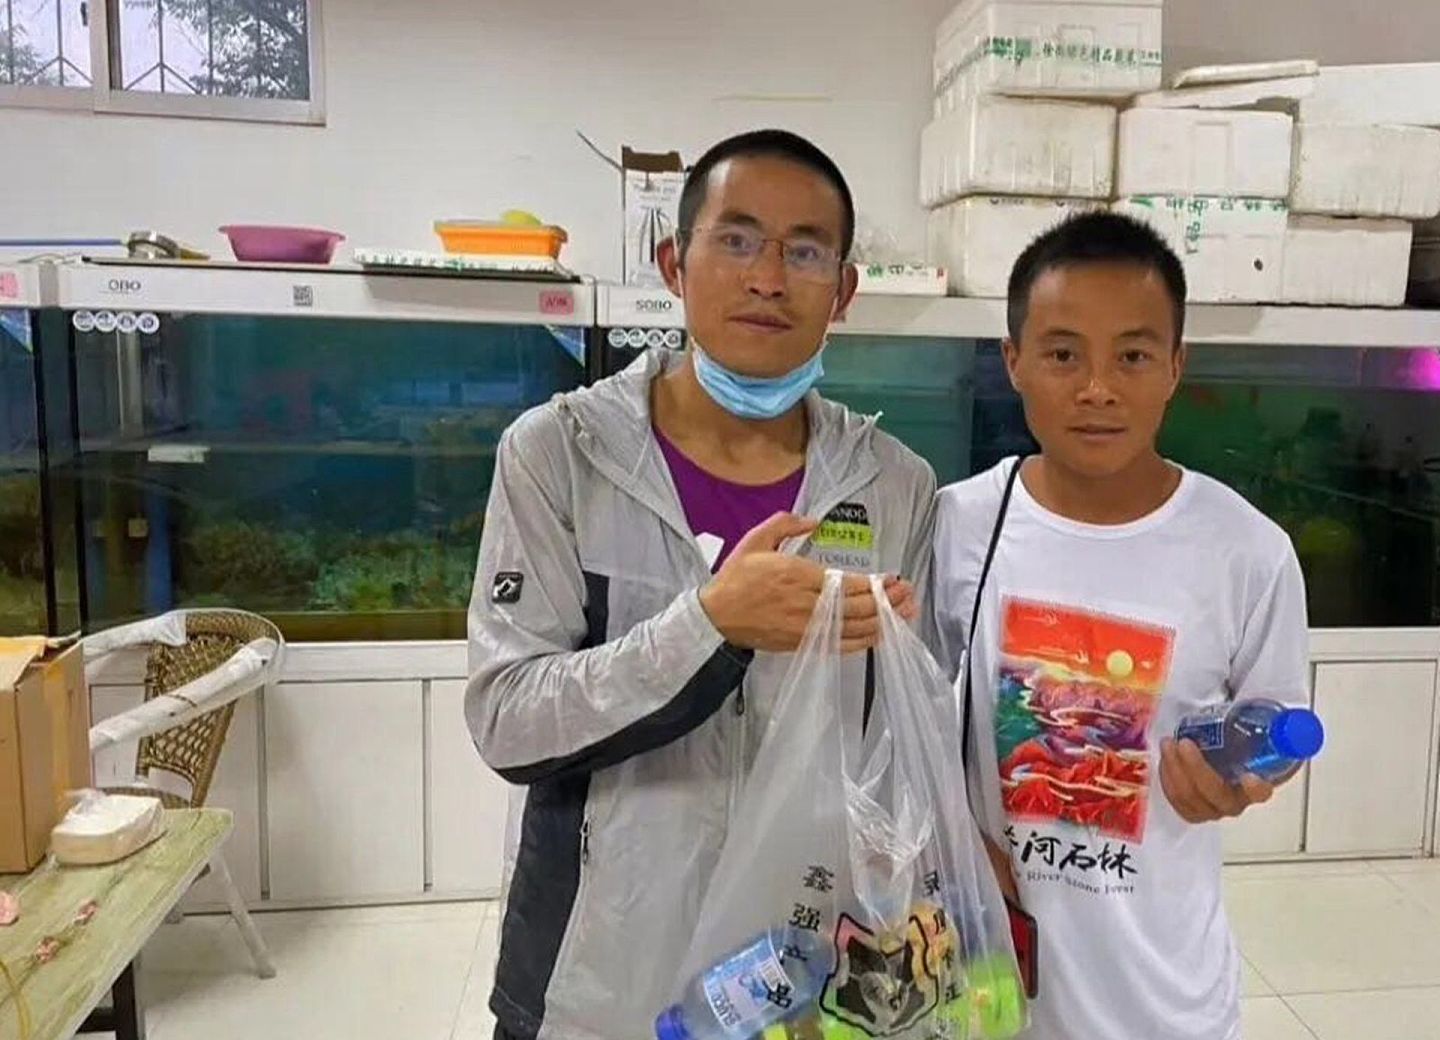 梁晶（左）是中国国内顶尖的越野选手之一，他在此前甘肃举行的马拉松比赛中死亡，被外界广为关注。（微博@dym吉祥）